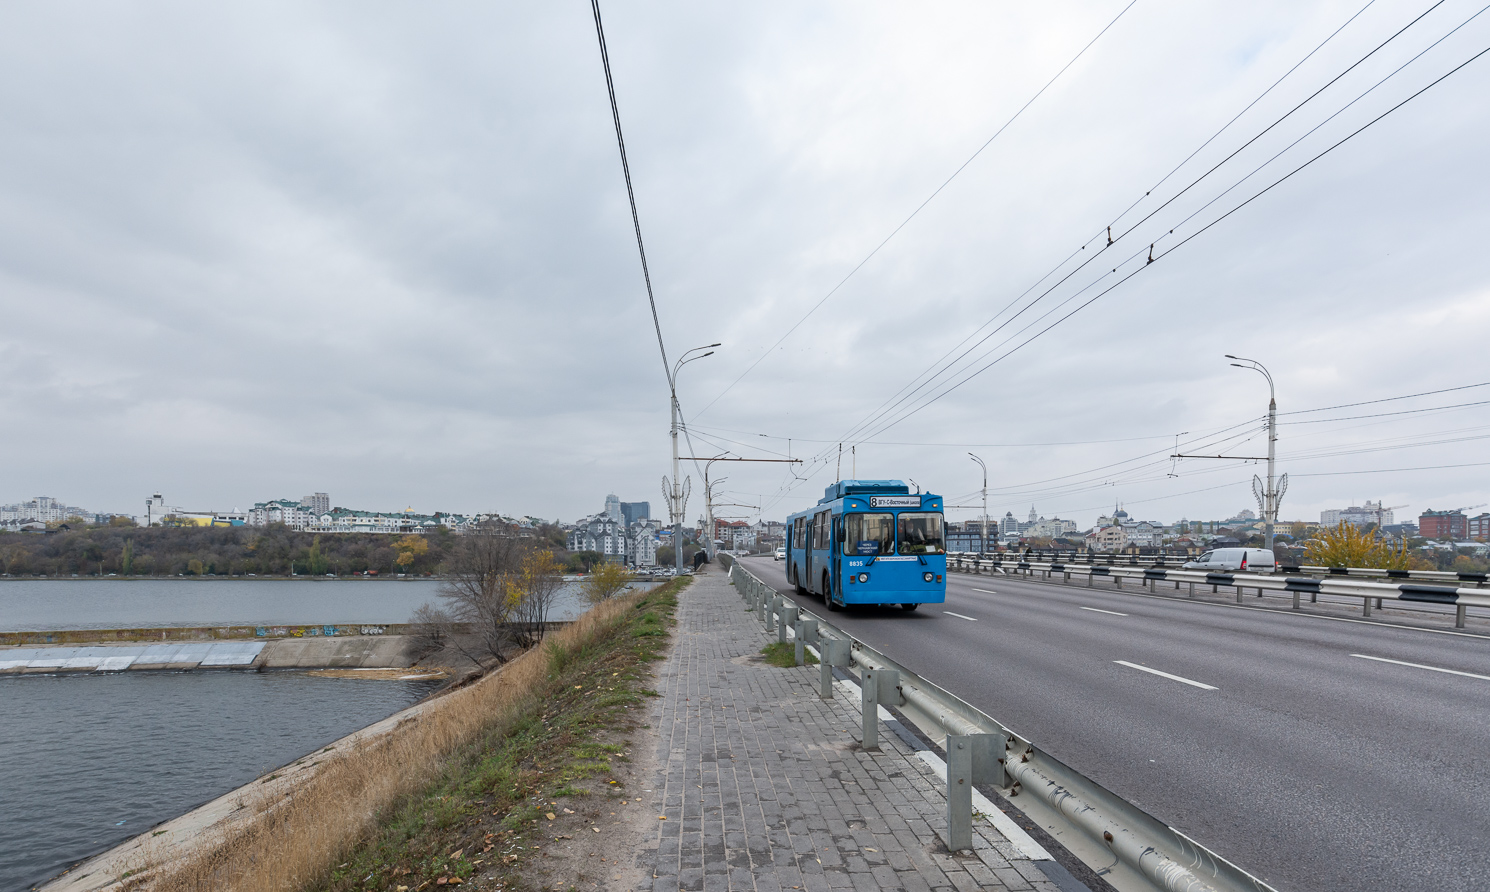 佛羅尼斯 — Trolleybus network and infrastructure